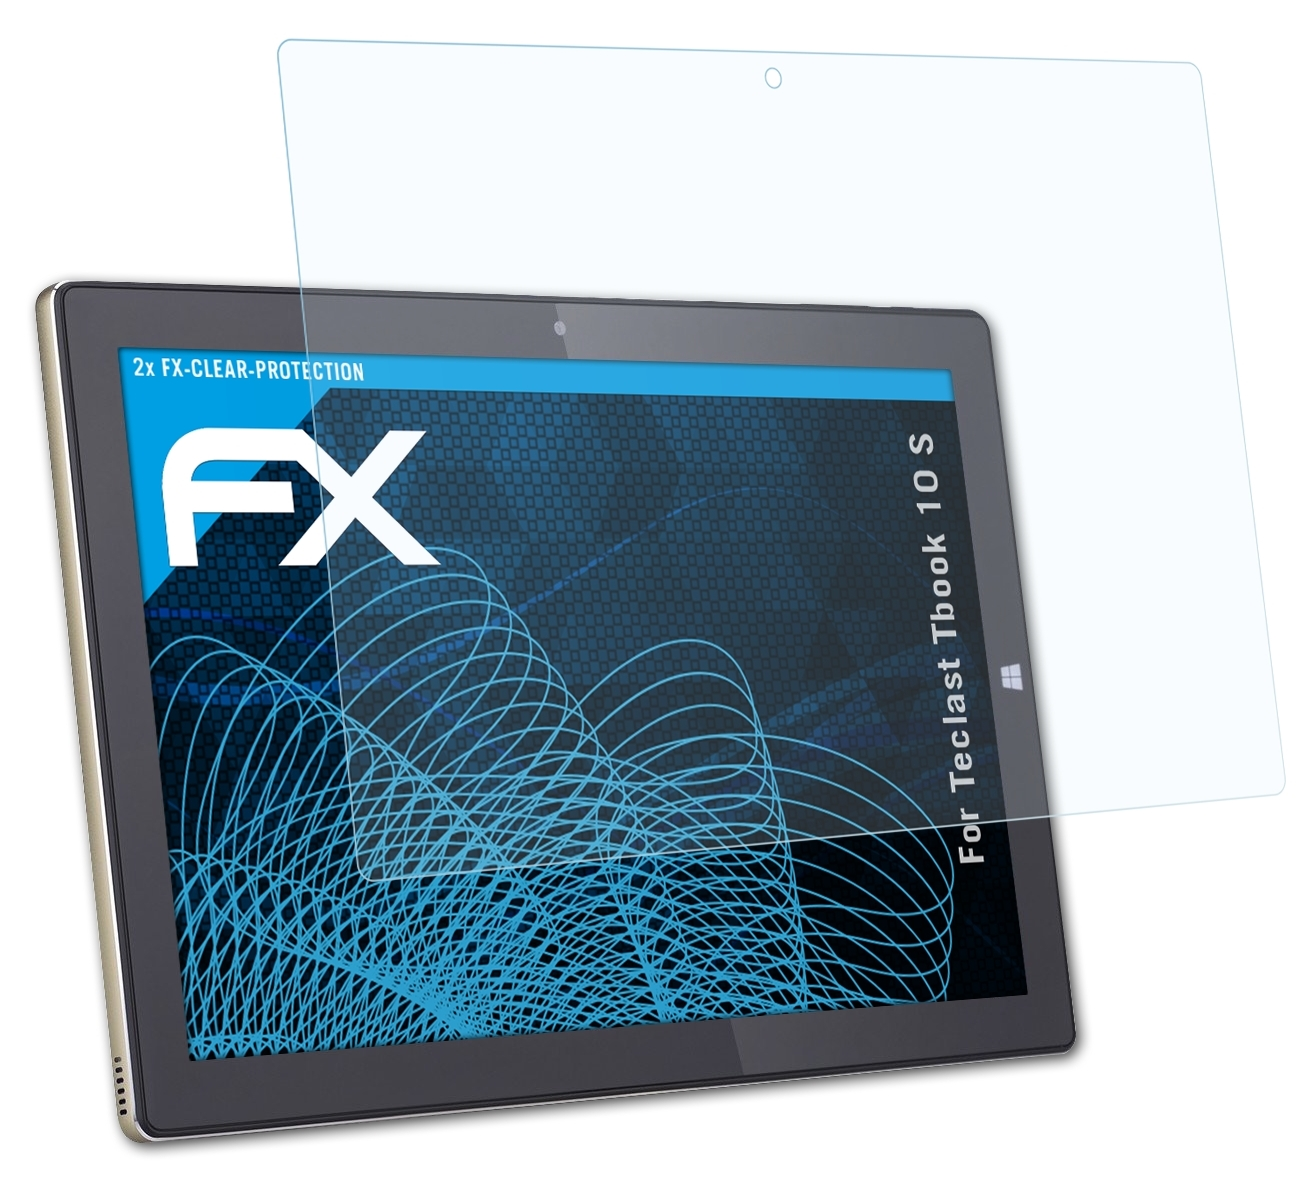 ATFOLIX 2x 10 S) Tbook Teclast FX-Clear Displayschutz(für